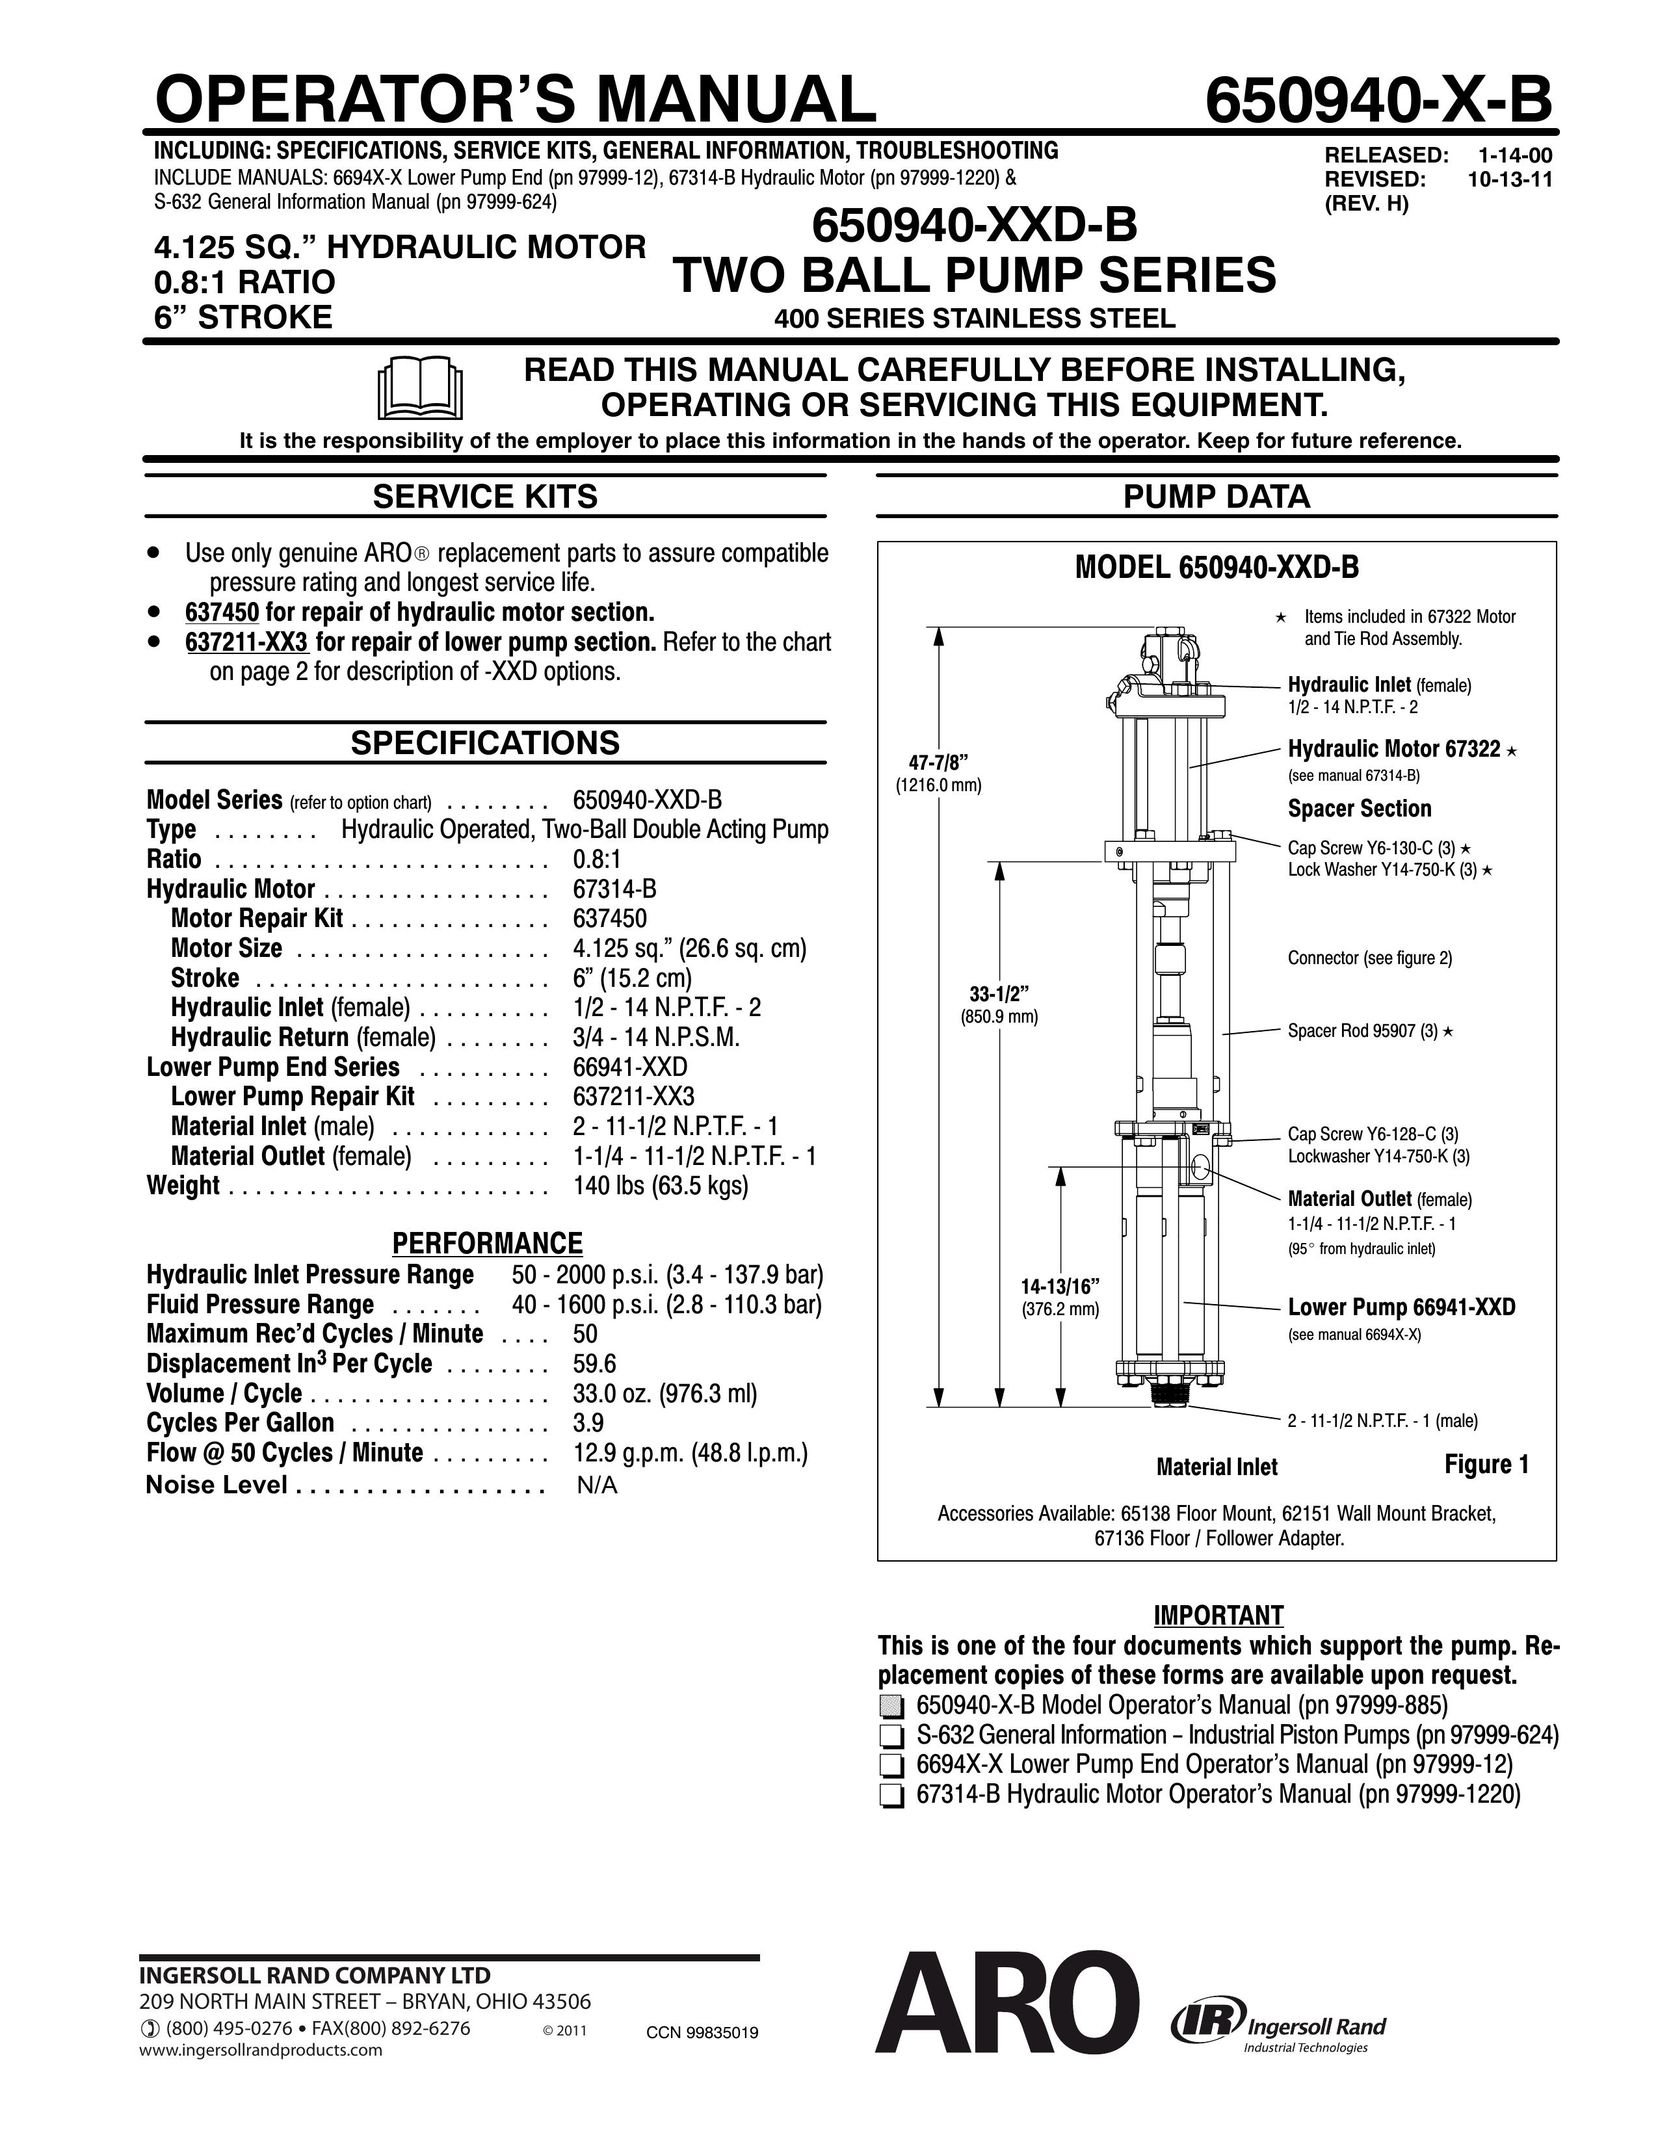 Ingersoll-Rand 650940-XXD-B Heat Pump User Manual